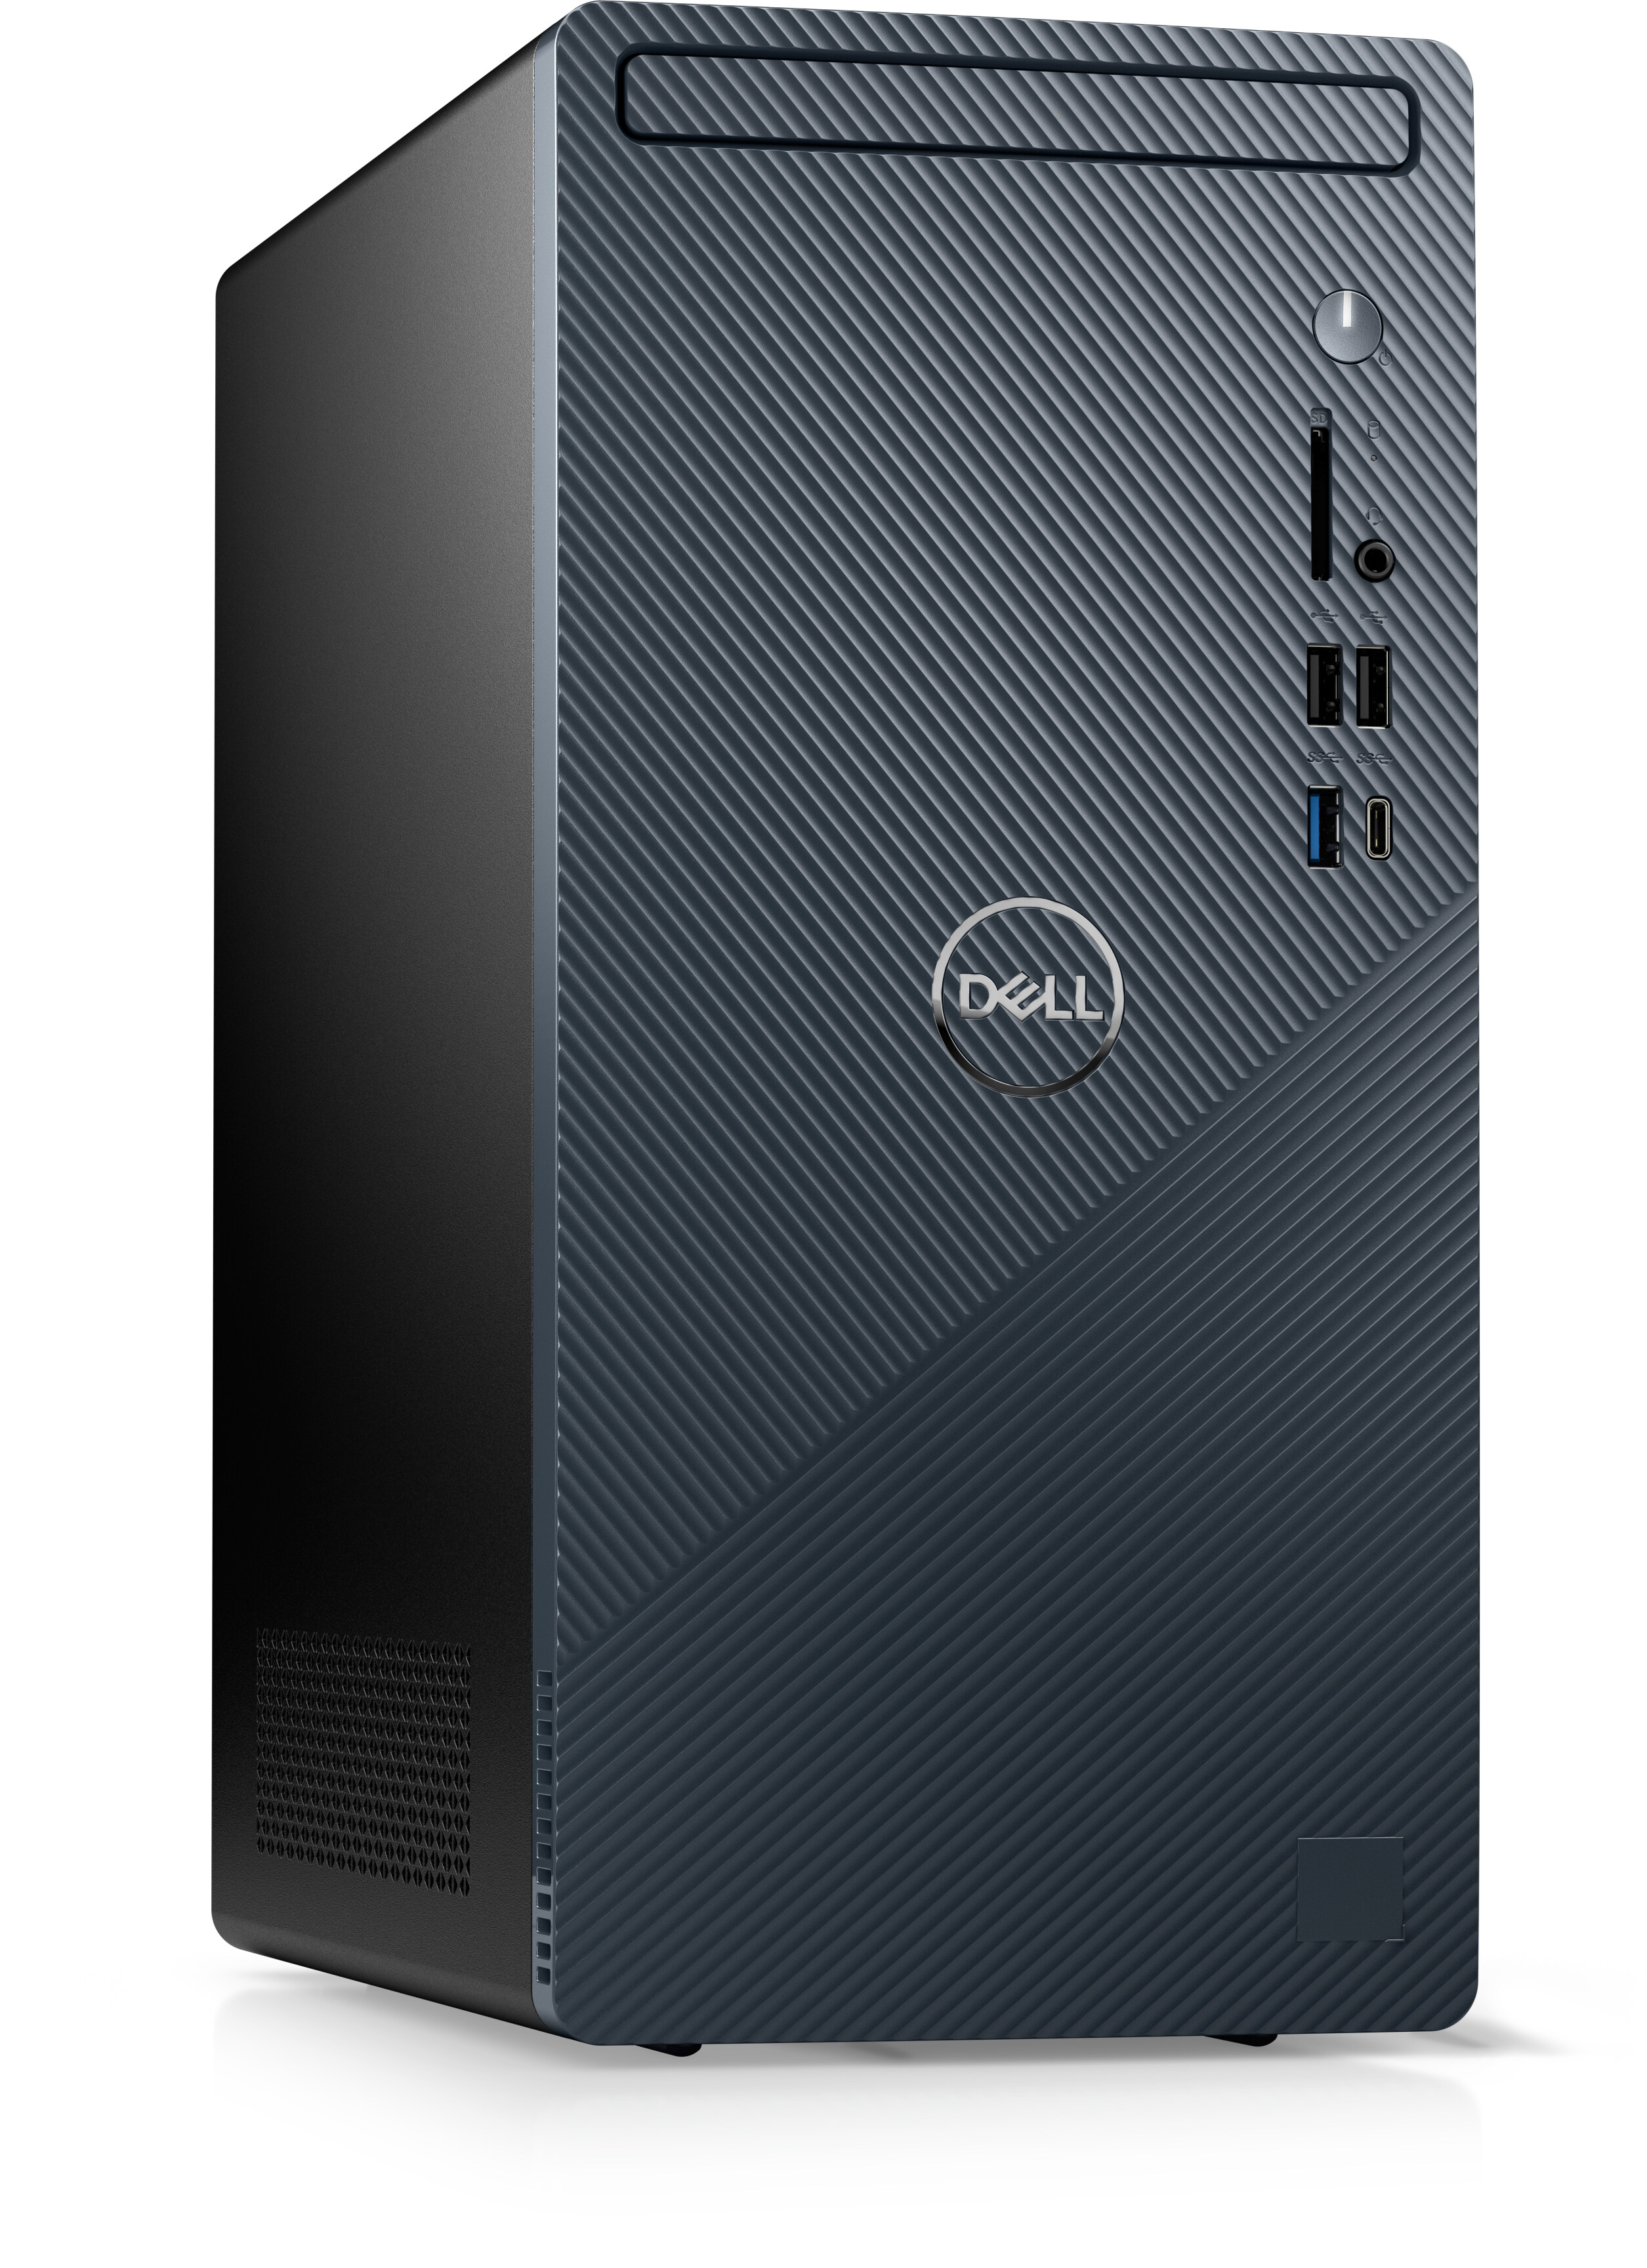 Dell Inspiron Desktop with the Latest Intel Processors | Dell Canada